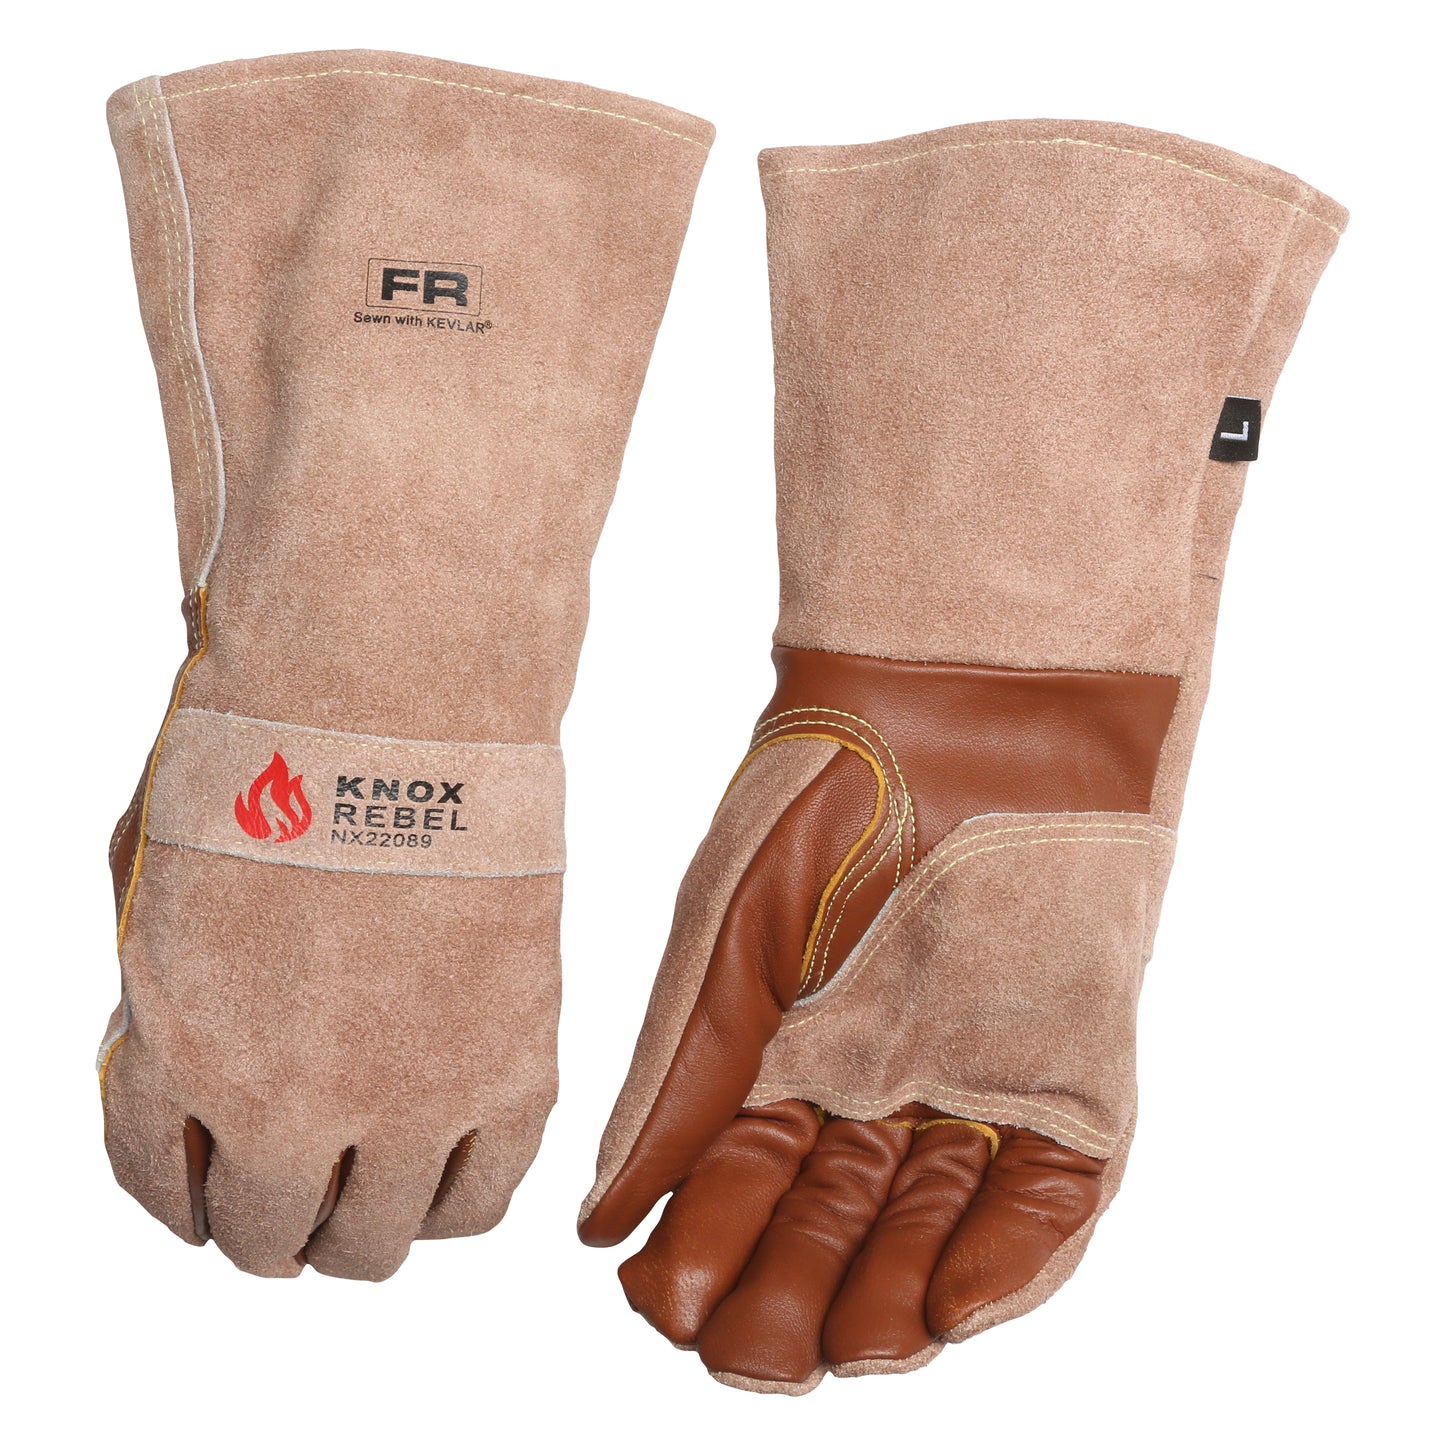 Knox Rebel FR Kevlar Stick Welding Gloves